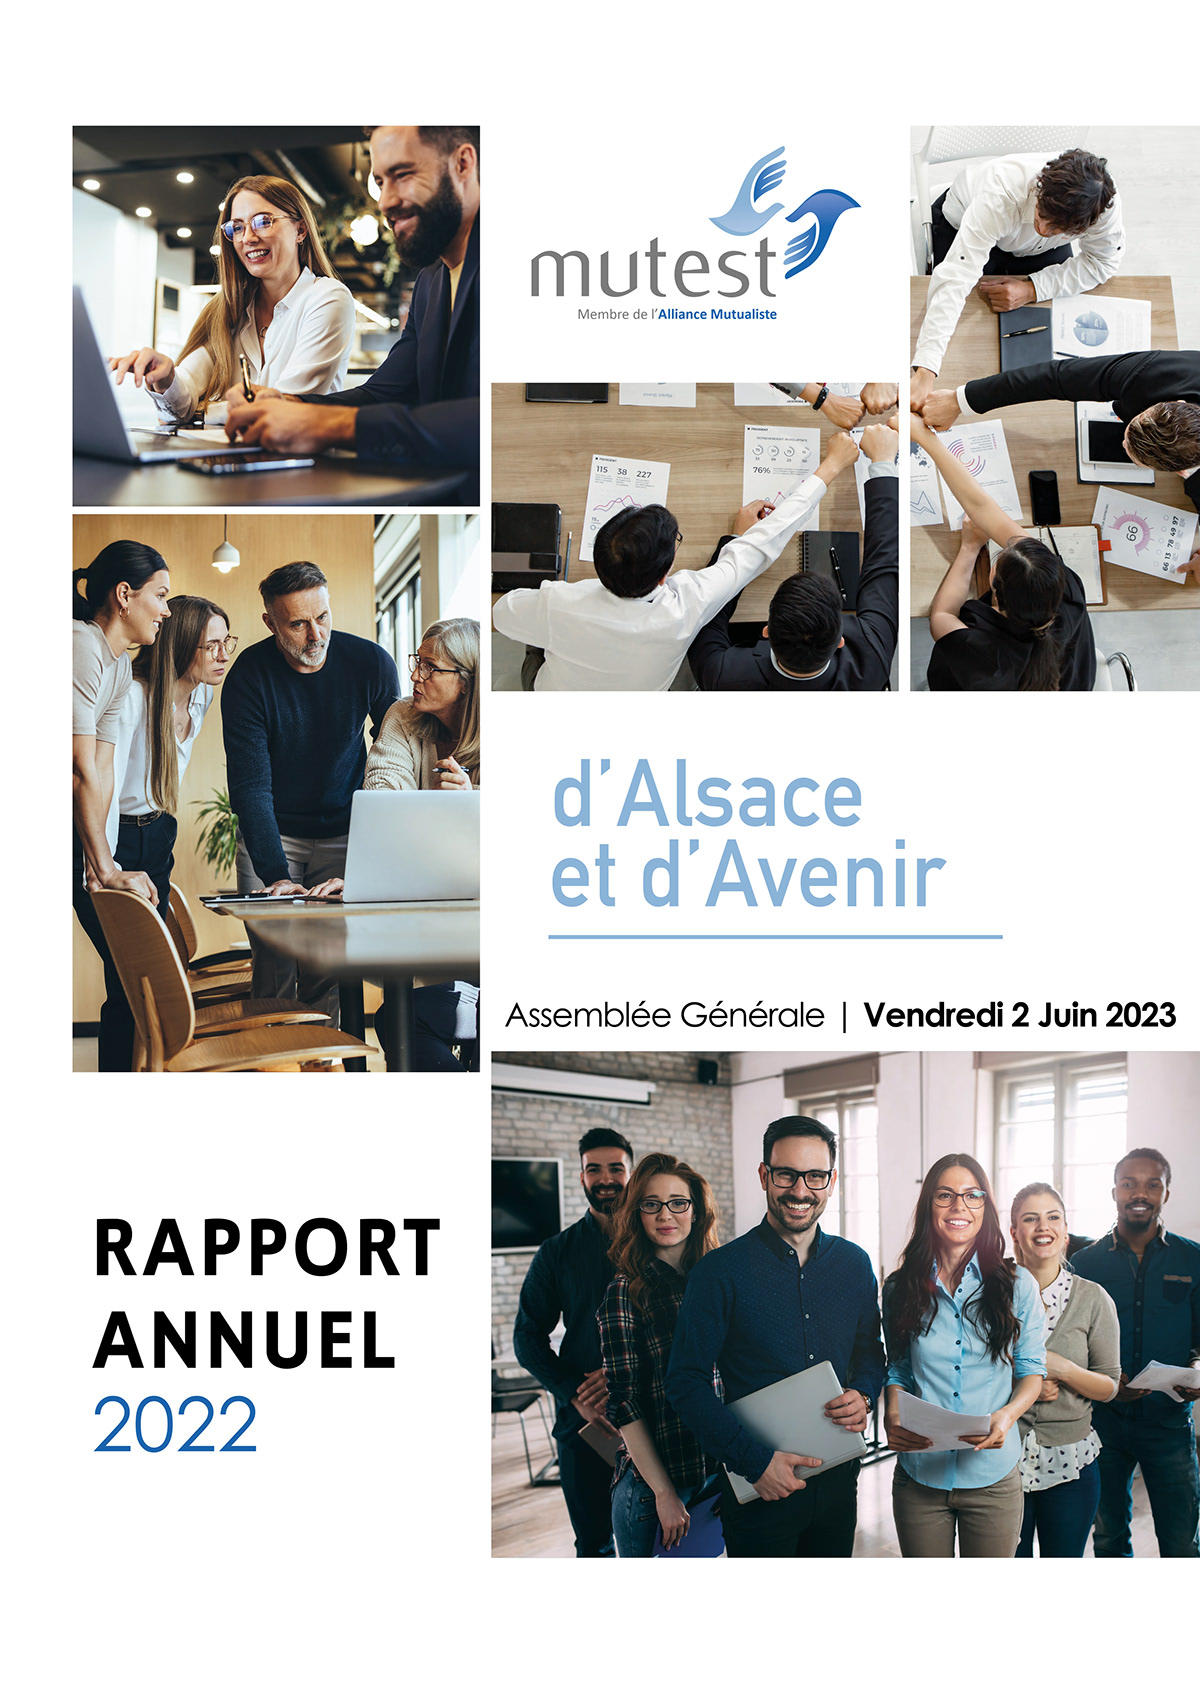 annual report assemblée générale brochure Epargne Mutuelle prévoyance rapport annuel santé